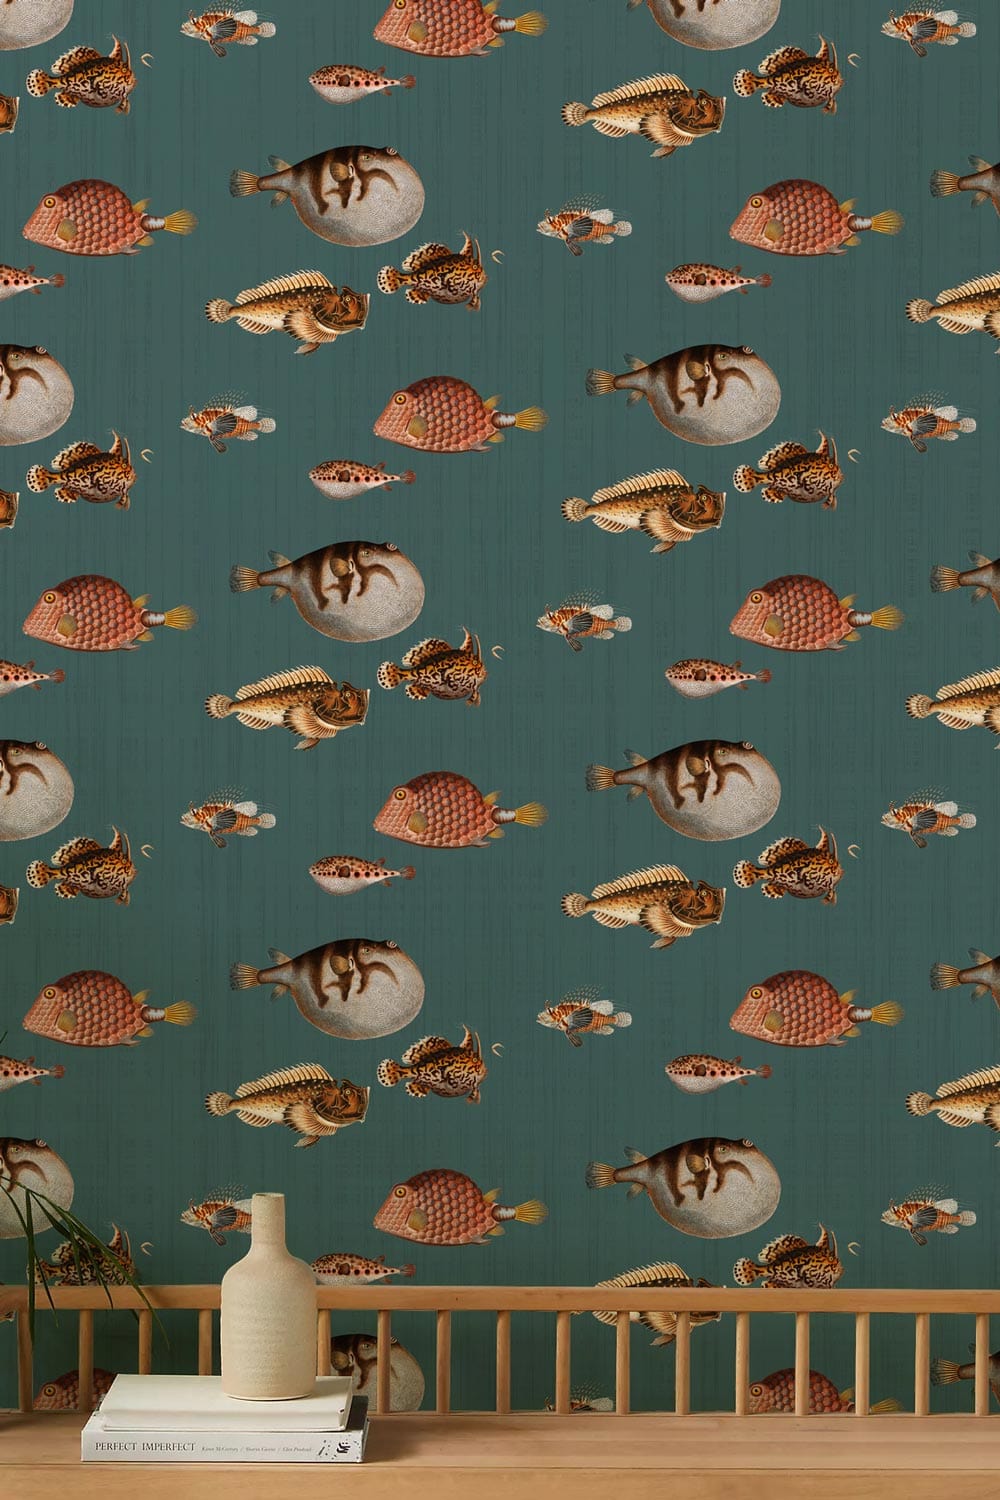 marine fishes in strange shapes hallway decoration